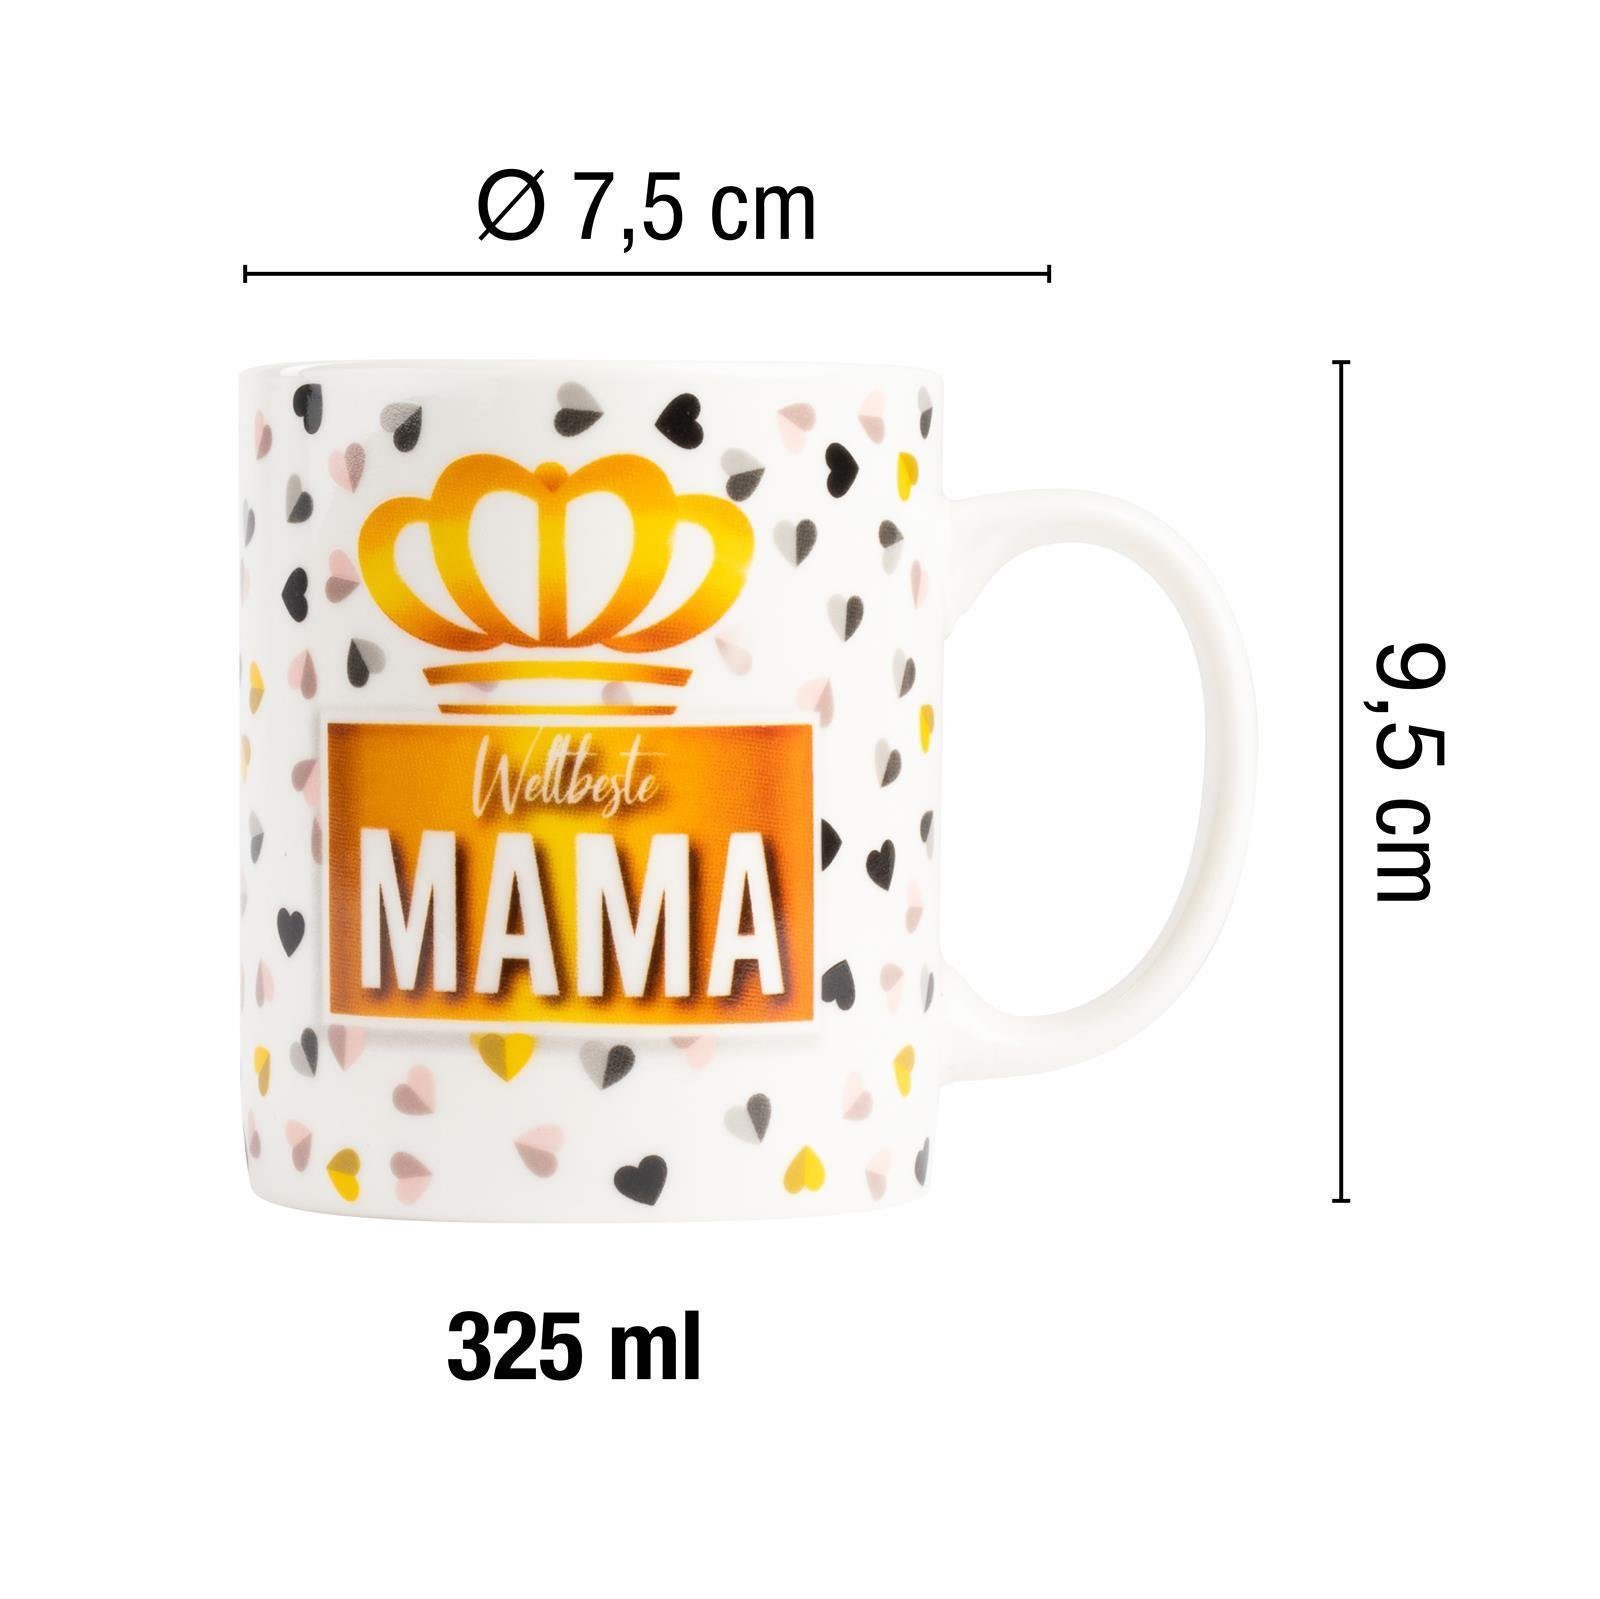 Kaffeebecher Mama mit Tasse Spruch ILP